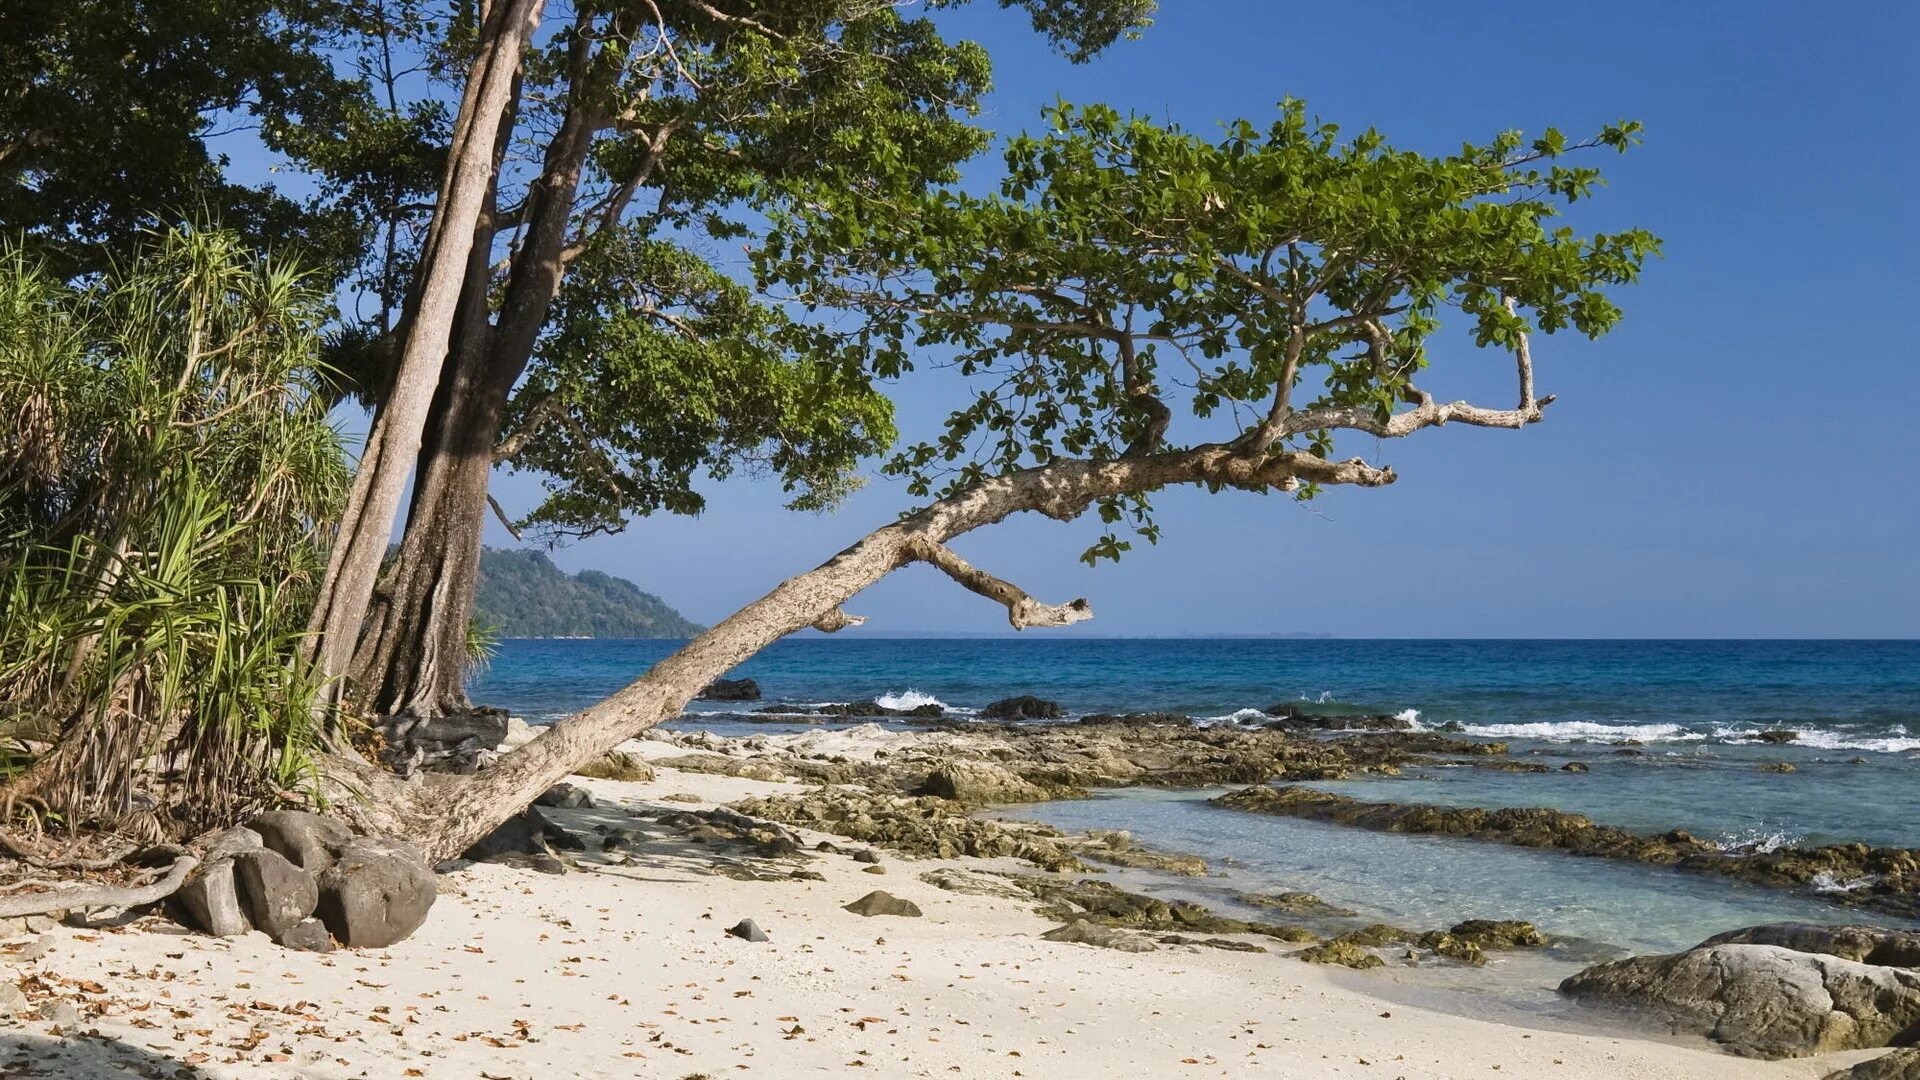 Остров хвойный. Хэвлок остров. Дерево на острове. Деревья на пляже. Сосны на берегу моря.